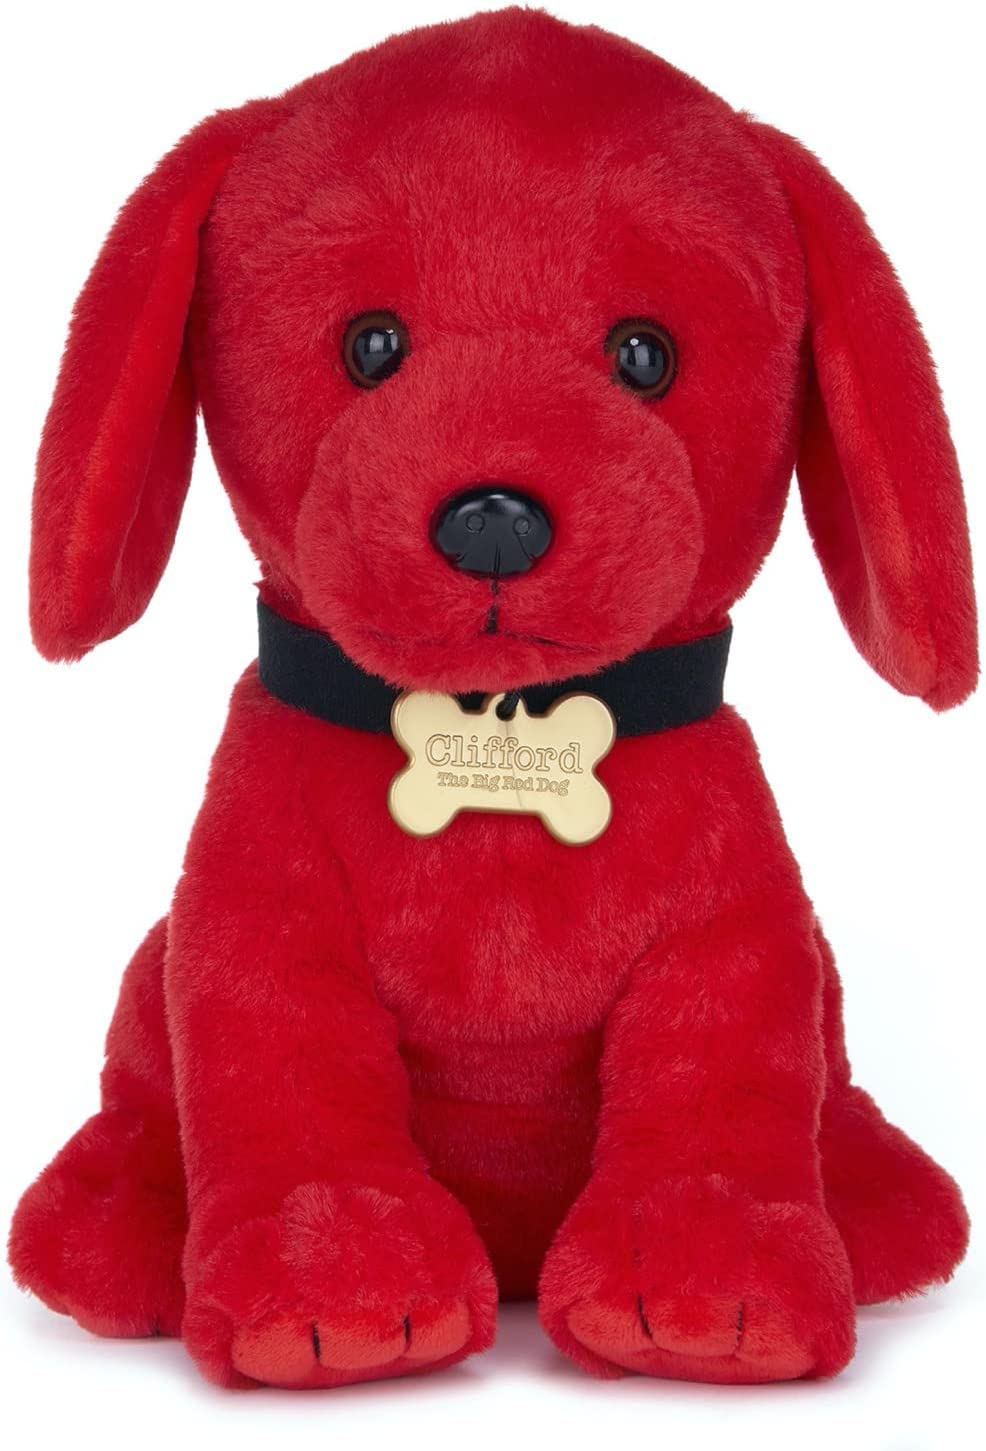 Posh Paws der Rote Hund 6674 Red Clifford The Big Dog 25 cm Plüschtier